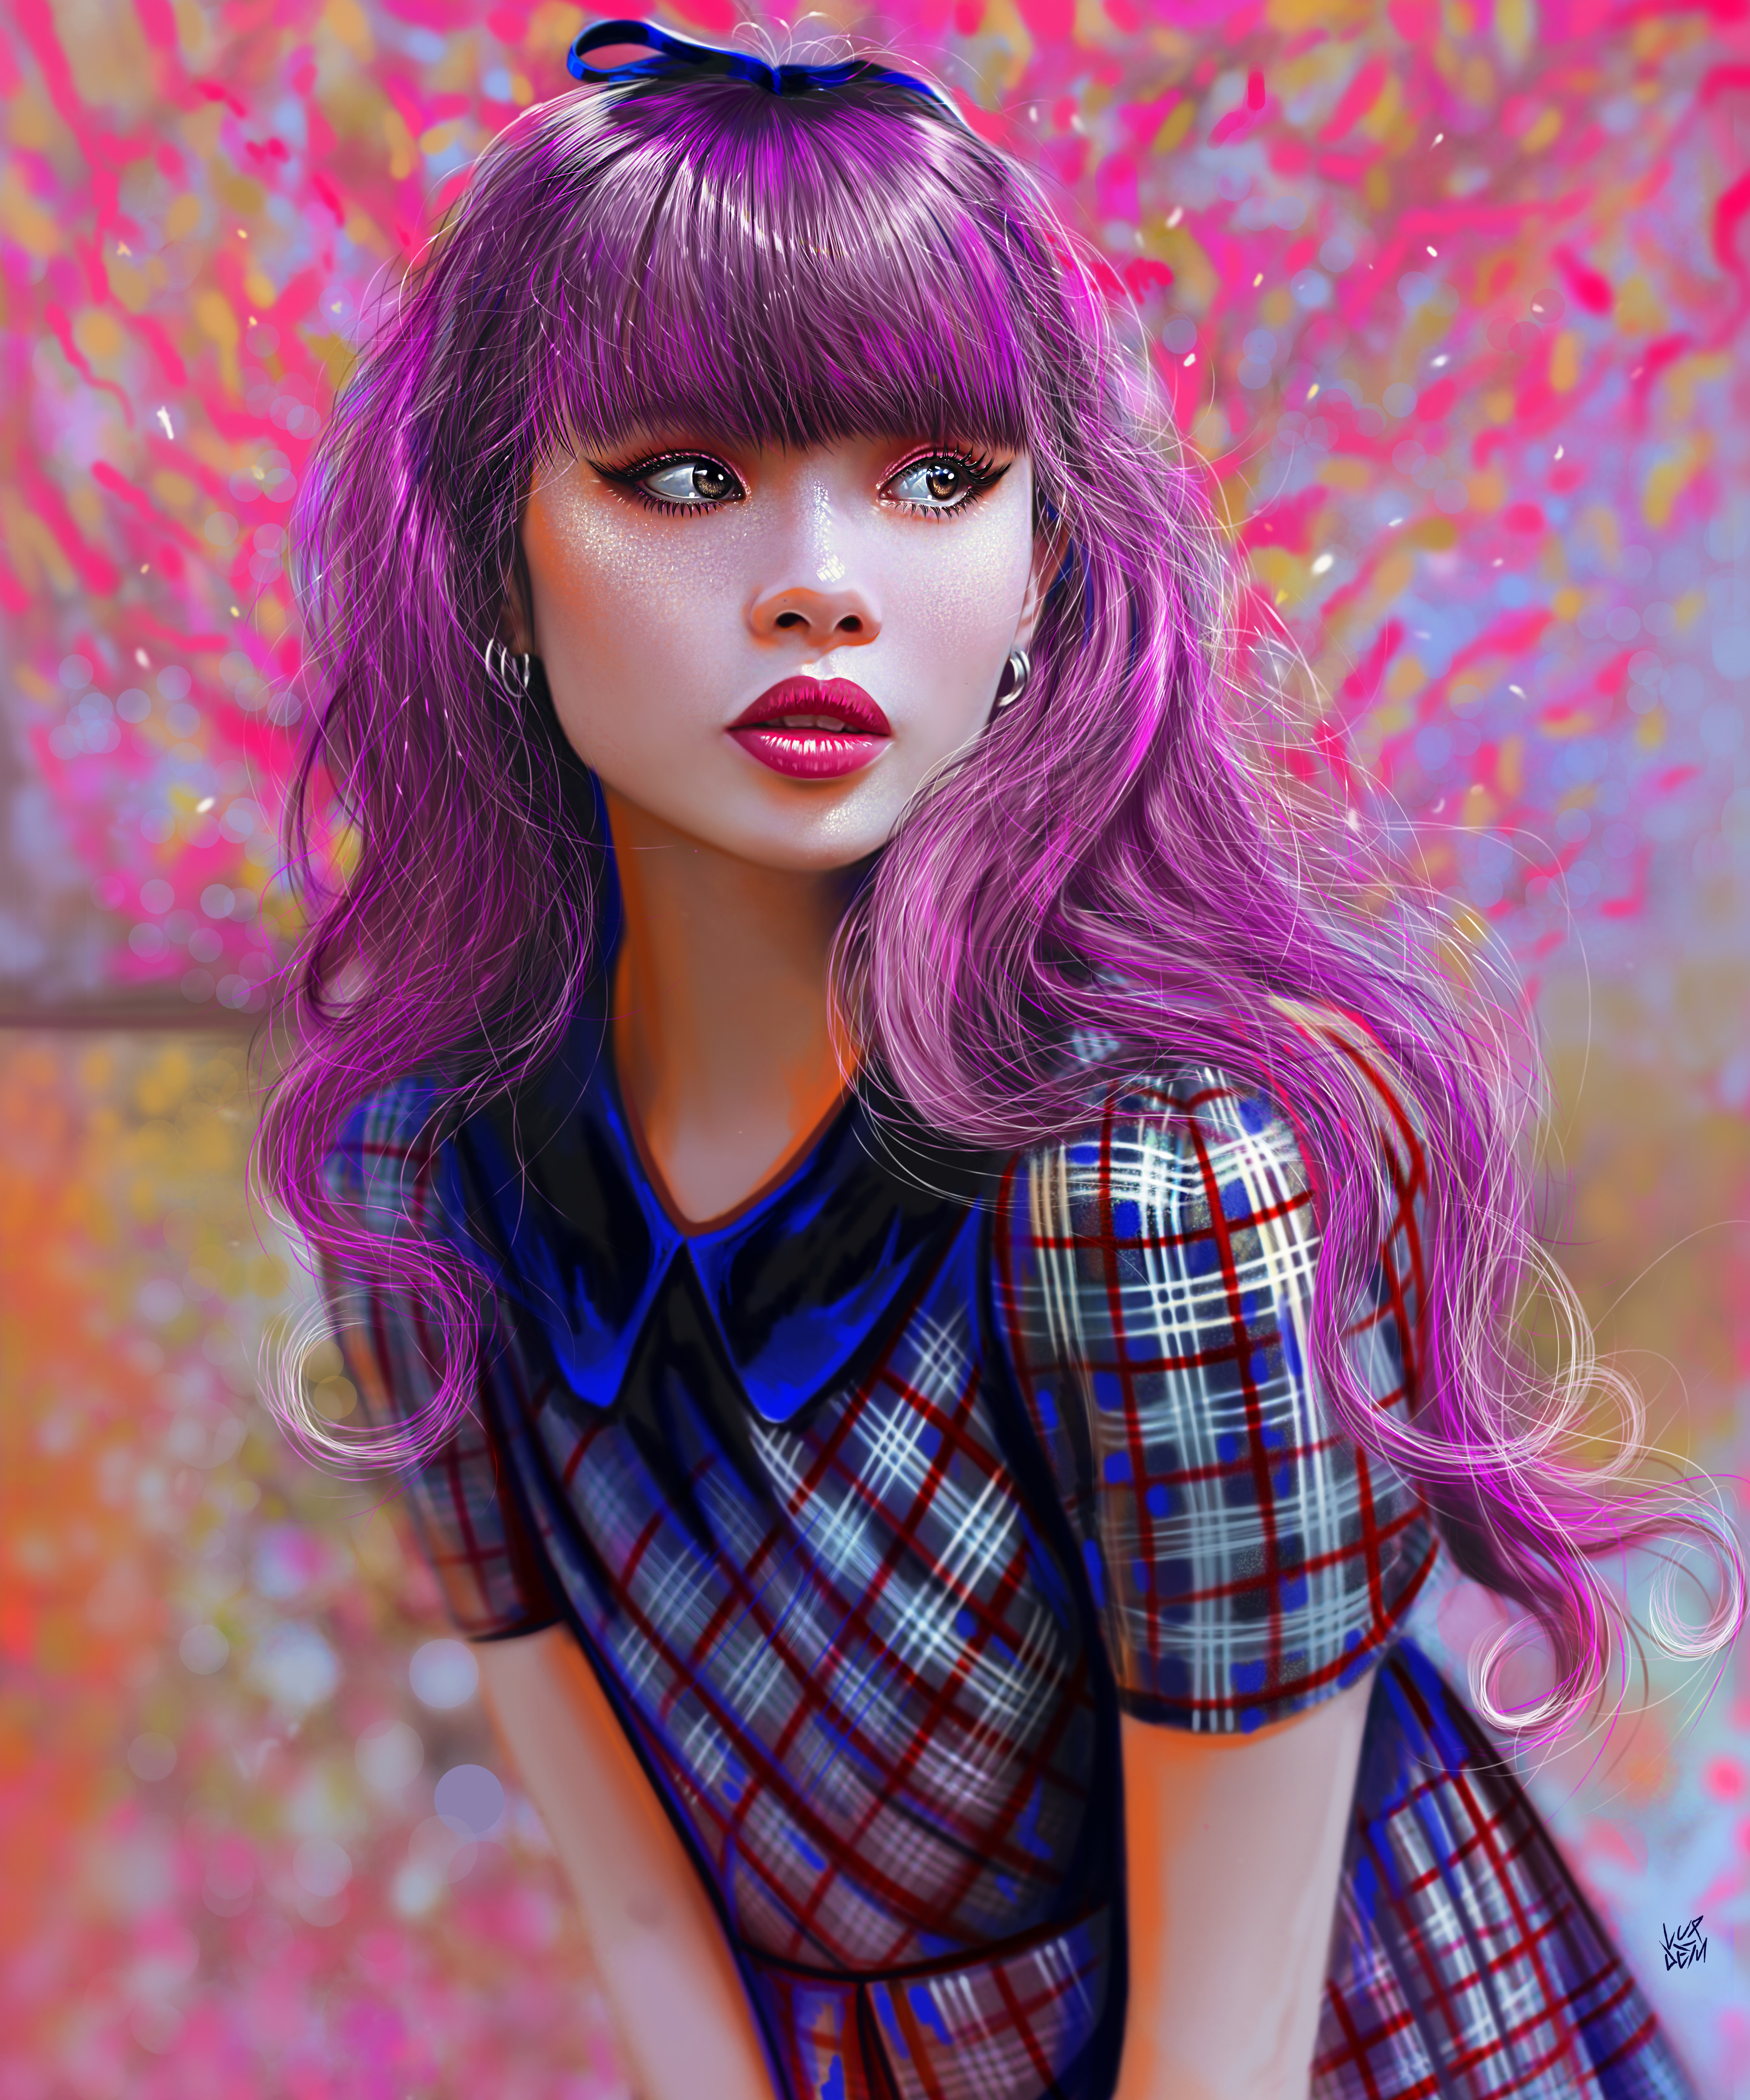 Purple
My Portrait Brushes: https://artstn.co/m/7DXp
Donate me: https://artstn.co/m/XVRe